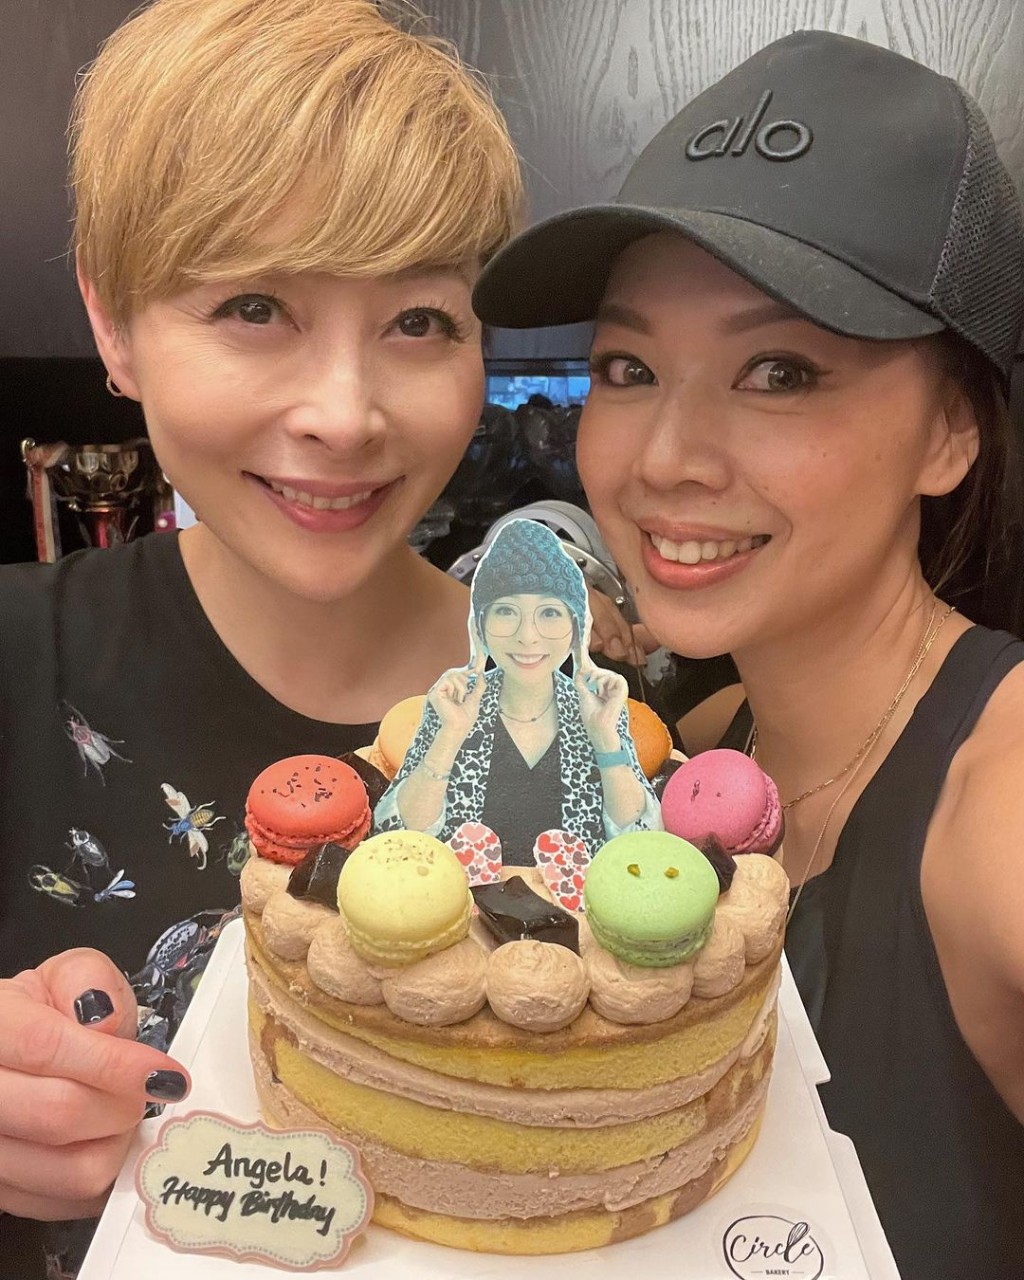 鍾麗淇貼出為湯盈盈慶祝生日的照片，蛋糕用盈盈戴佛陀頭套的照片，相當搞笑。